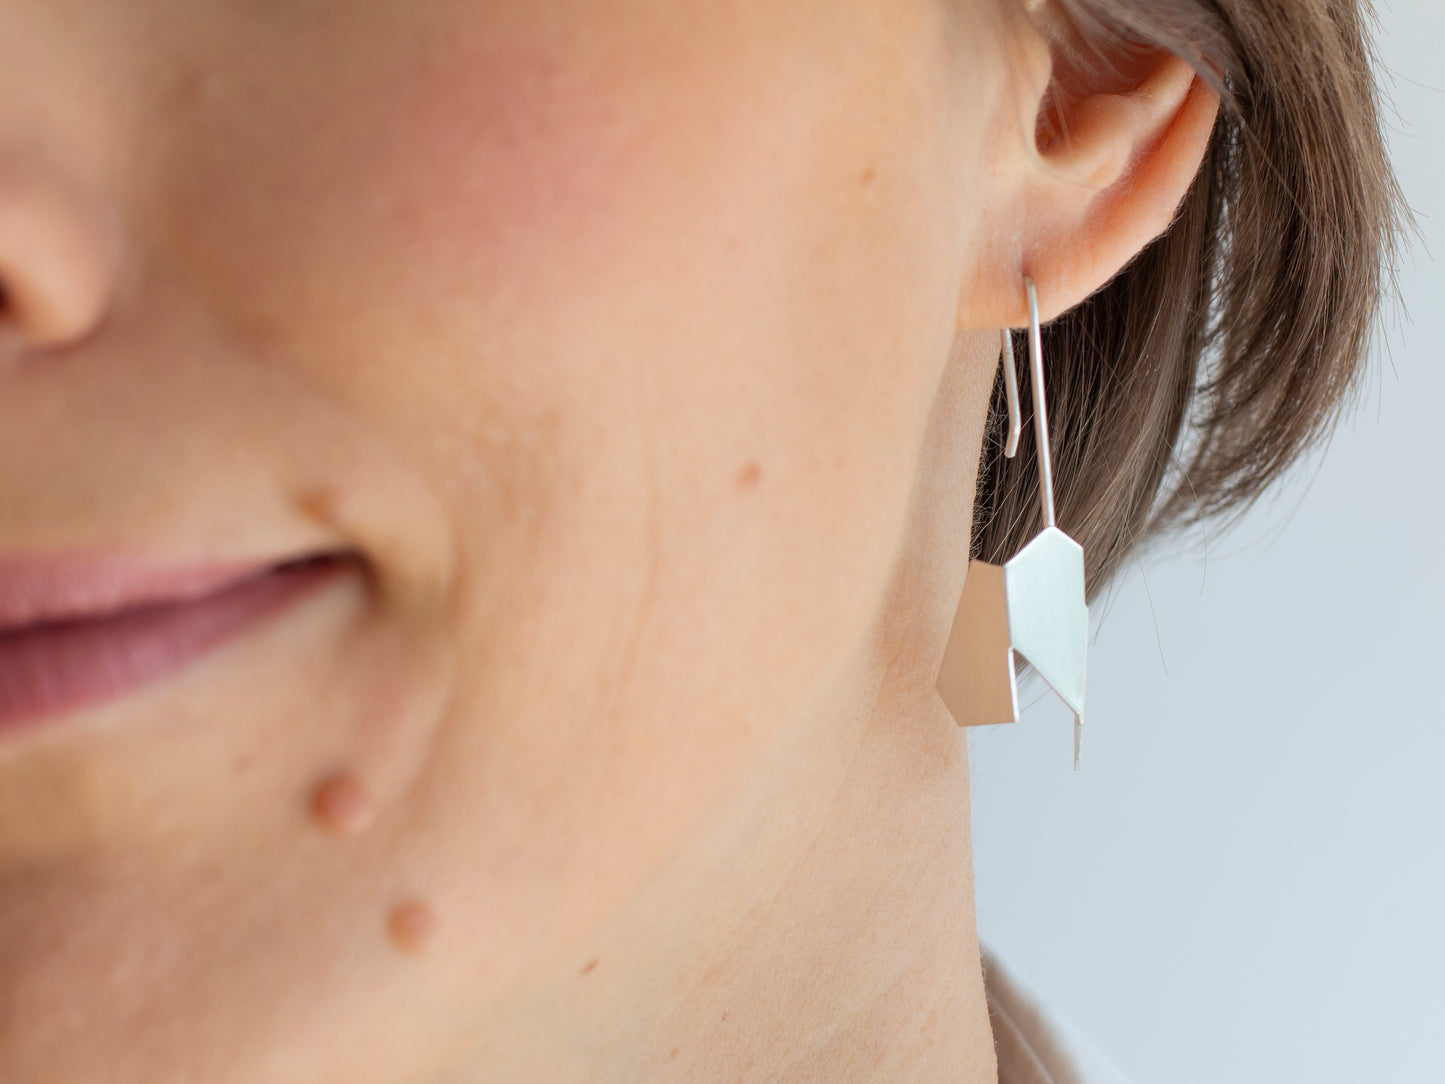 Geometric dangle sterling silver earrings